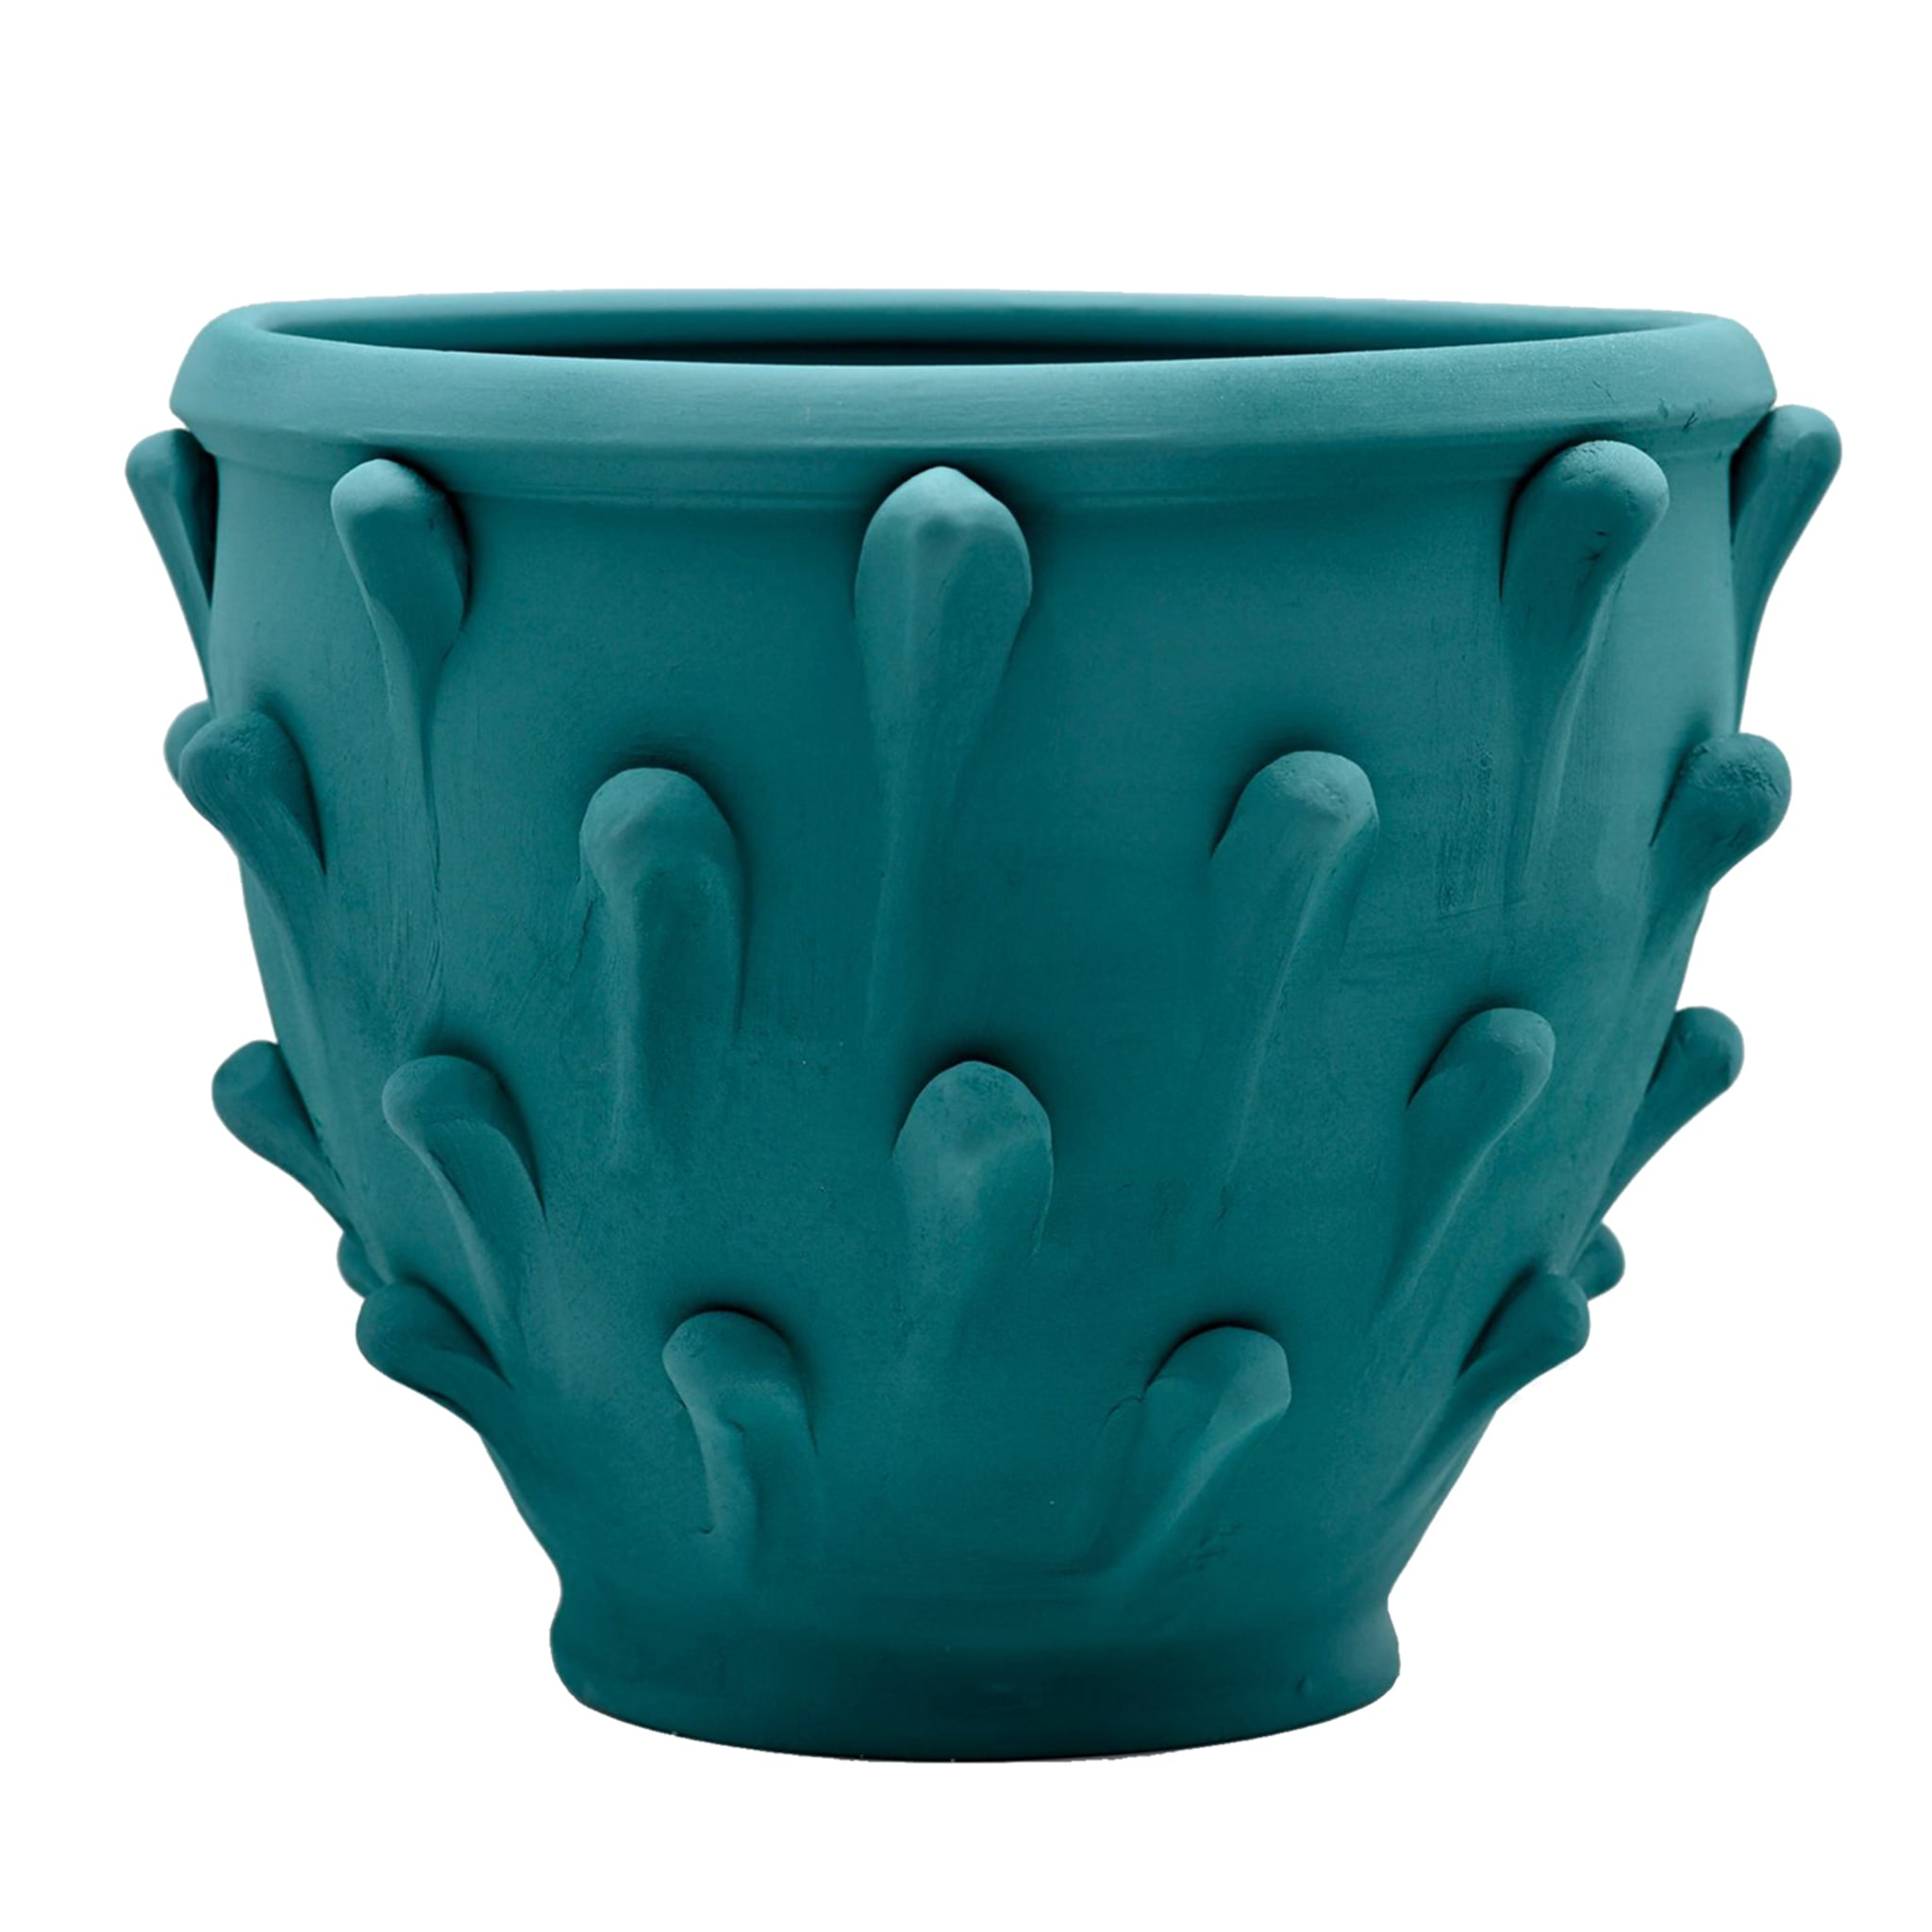 Türkisfarbene Vase #1 - Hauptansicht